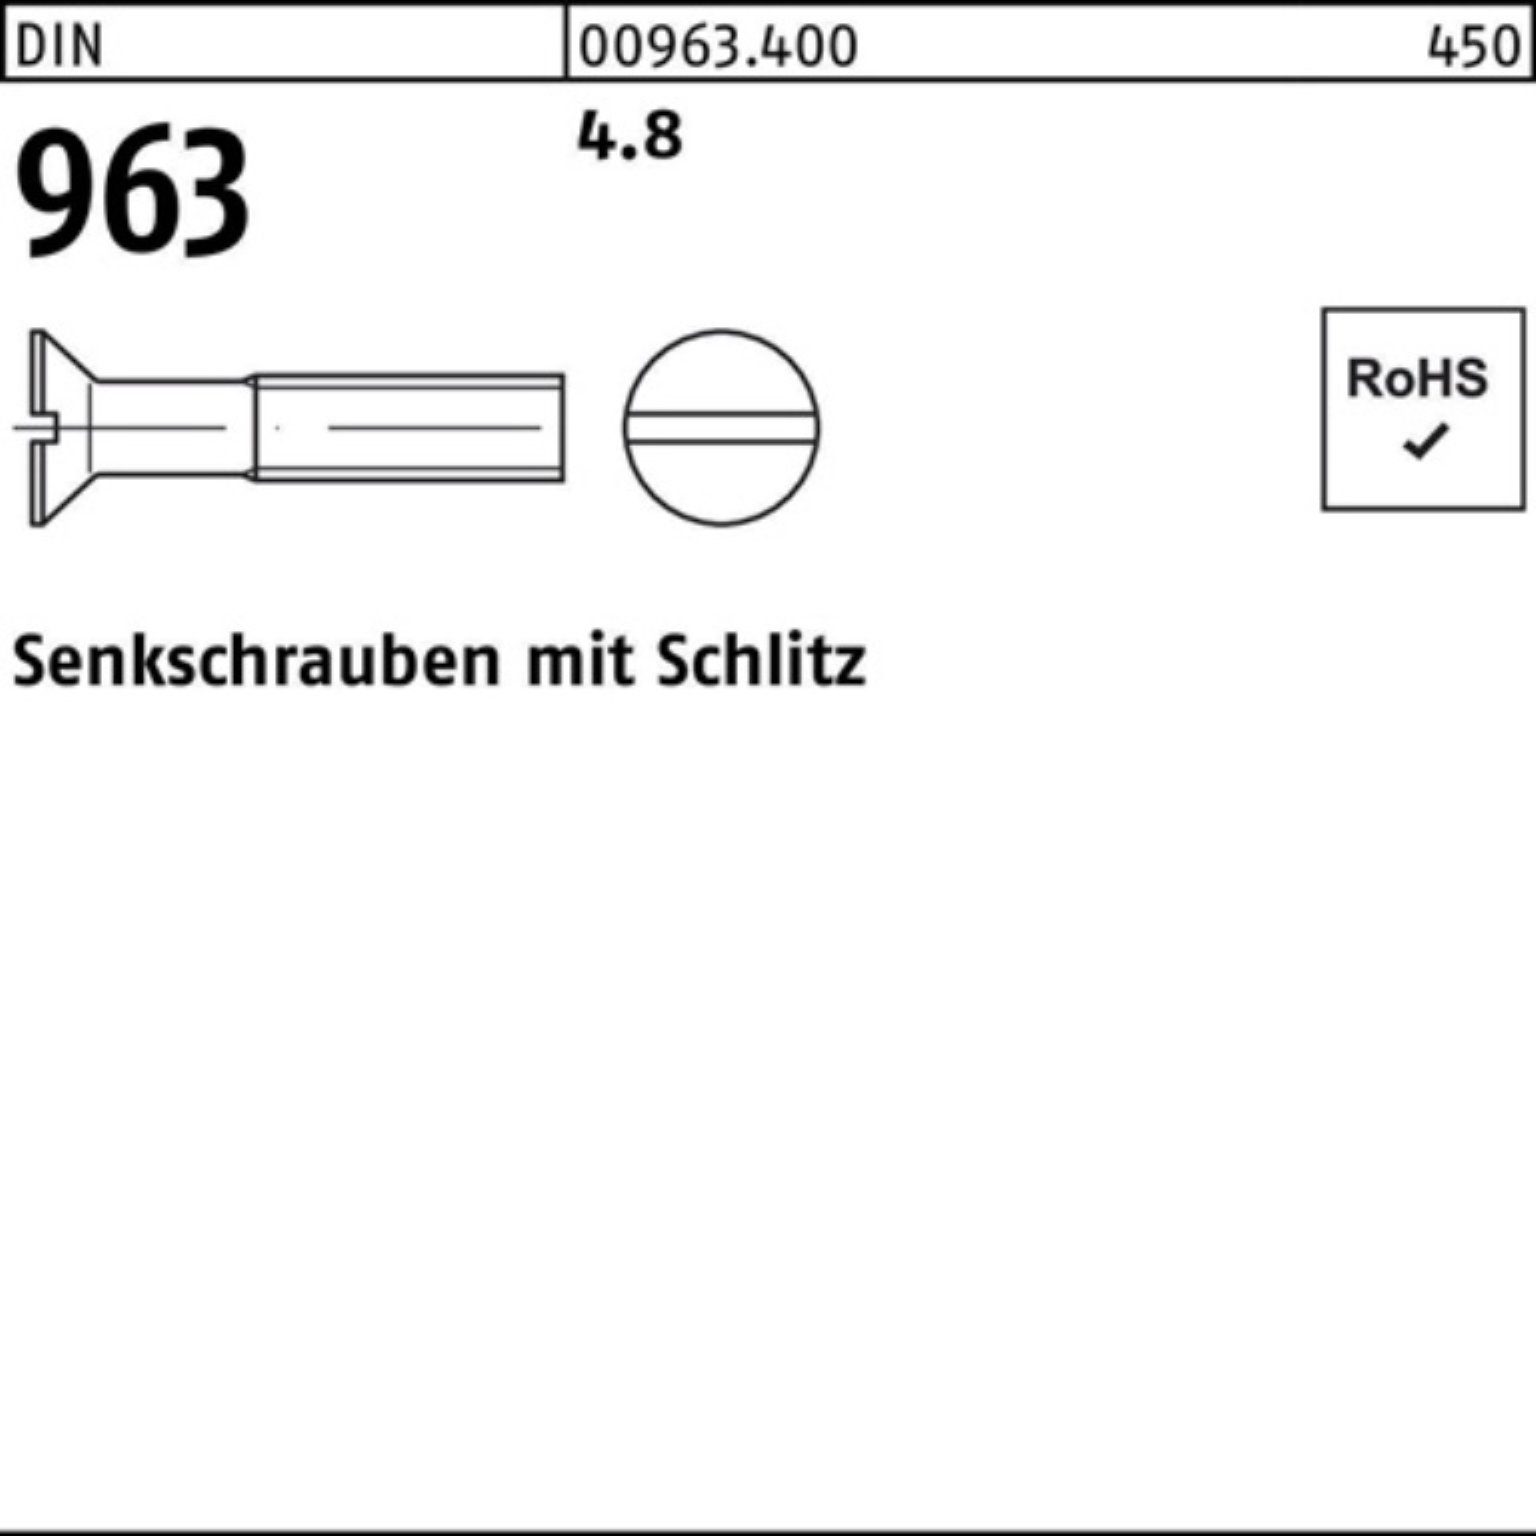 2000 20 2000er Reyher Pack Senkschraube 4.8 DIN M3x Senkschraube DIN Schlitz Stück 96 963